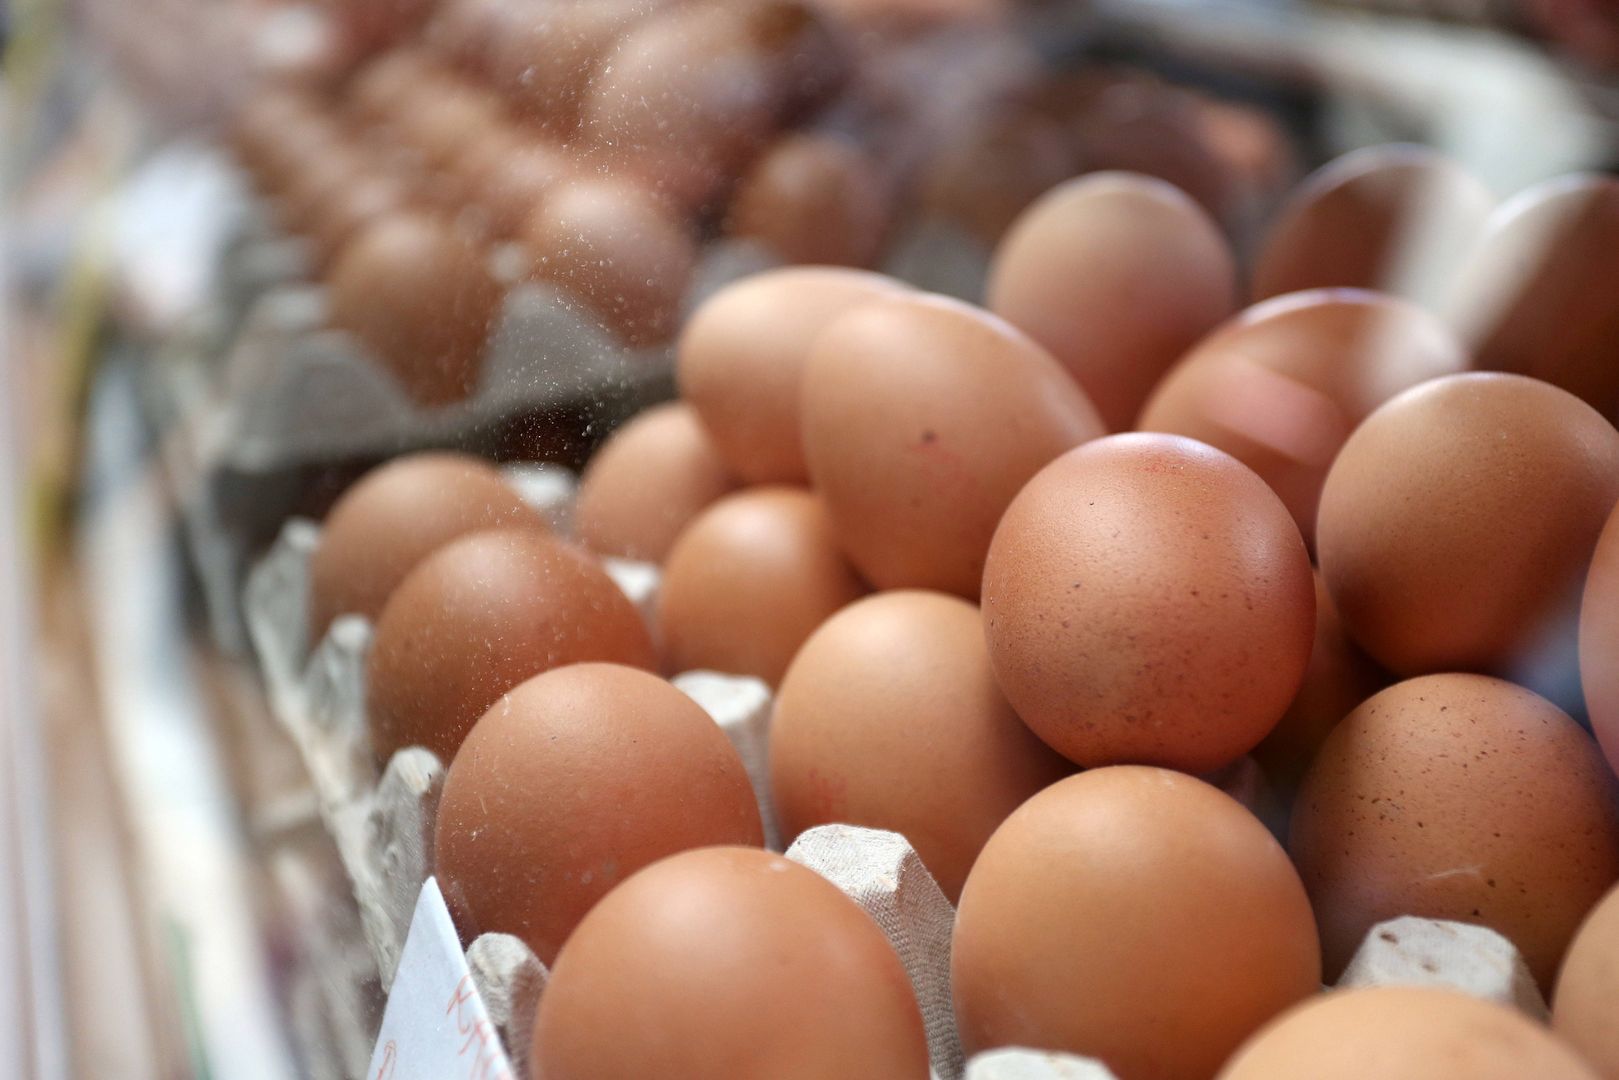 Toksyczne jajka coraz bliżej Polski. 2 miliony w Belgii, Holandii, a teraz w Niemczech